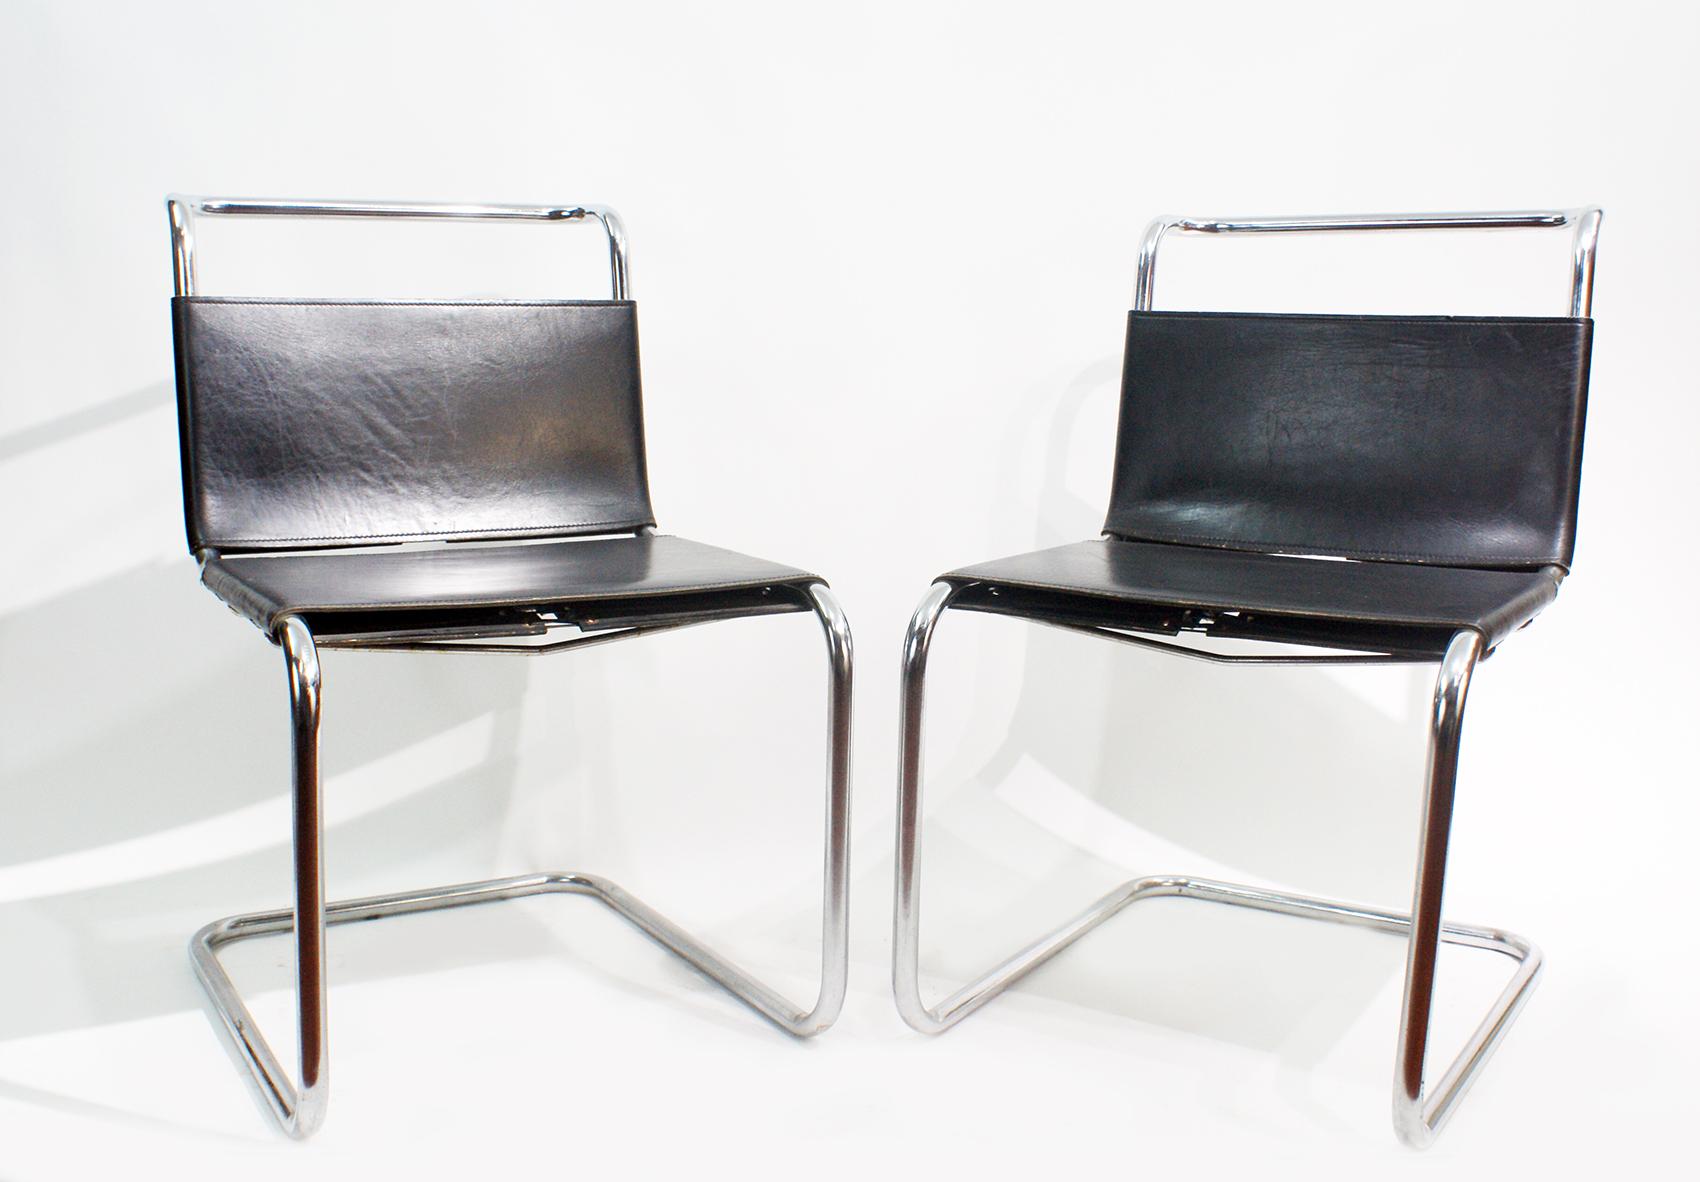 Une paire de salons cantilever vintage de Mies van der Rohe, modèle MR 10 produit par Knoll International
La chaise est dotée d'un cuir de ceinture noir utilisé comme élingue pour le dossier et l'assise, et d'un acier tubulaire chromé.
Ludwig Mies